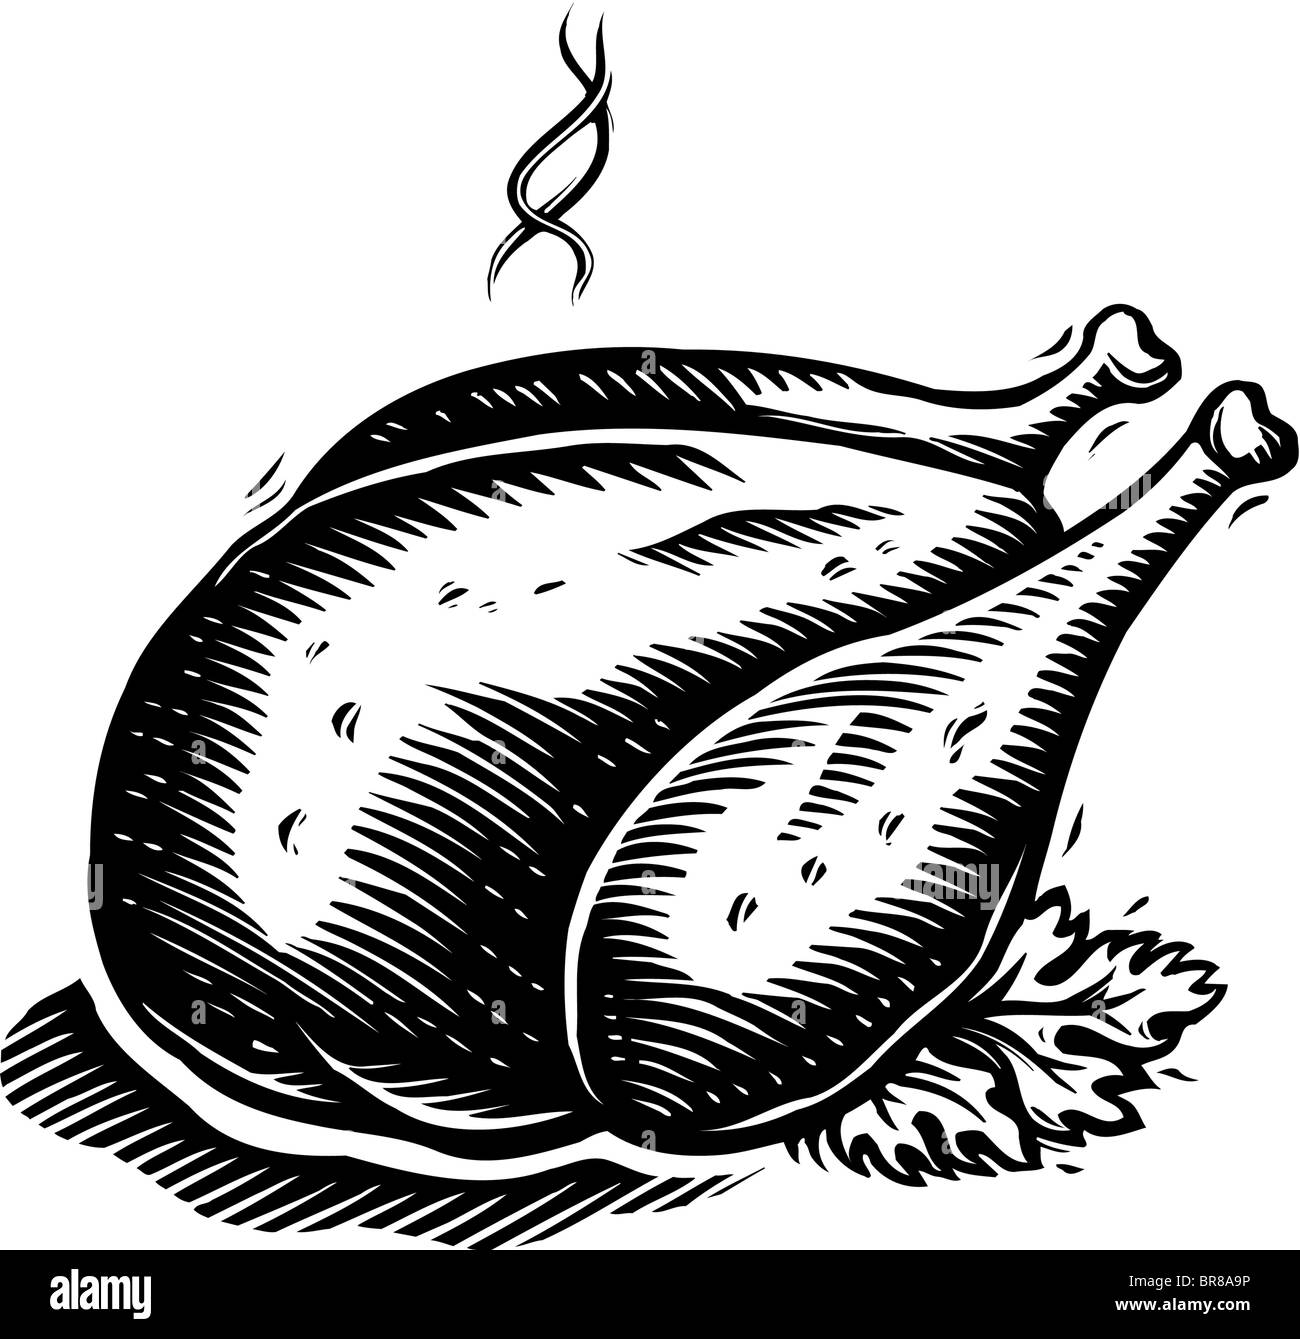 Eine Zeichnung von einem gebratenem Truthahn in schwarz / weiß servierbereit Stockfoto